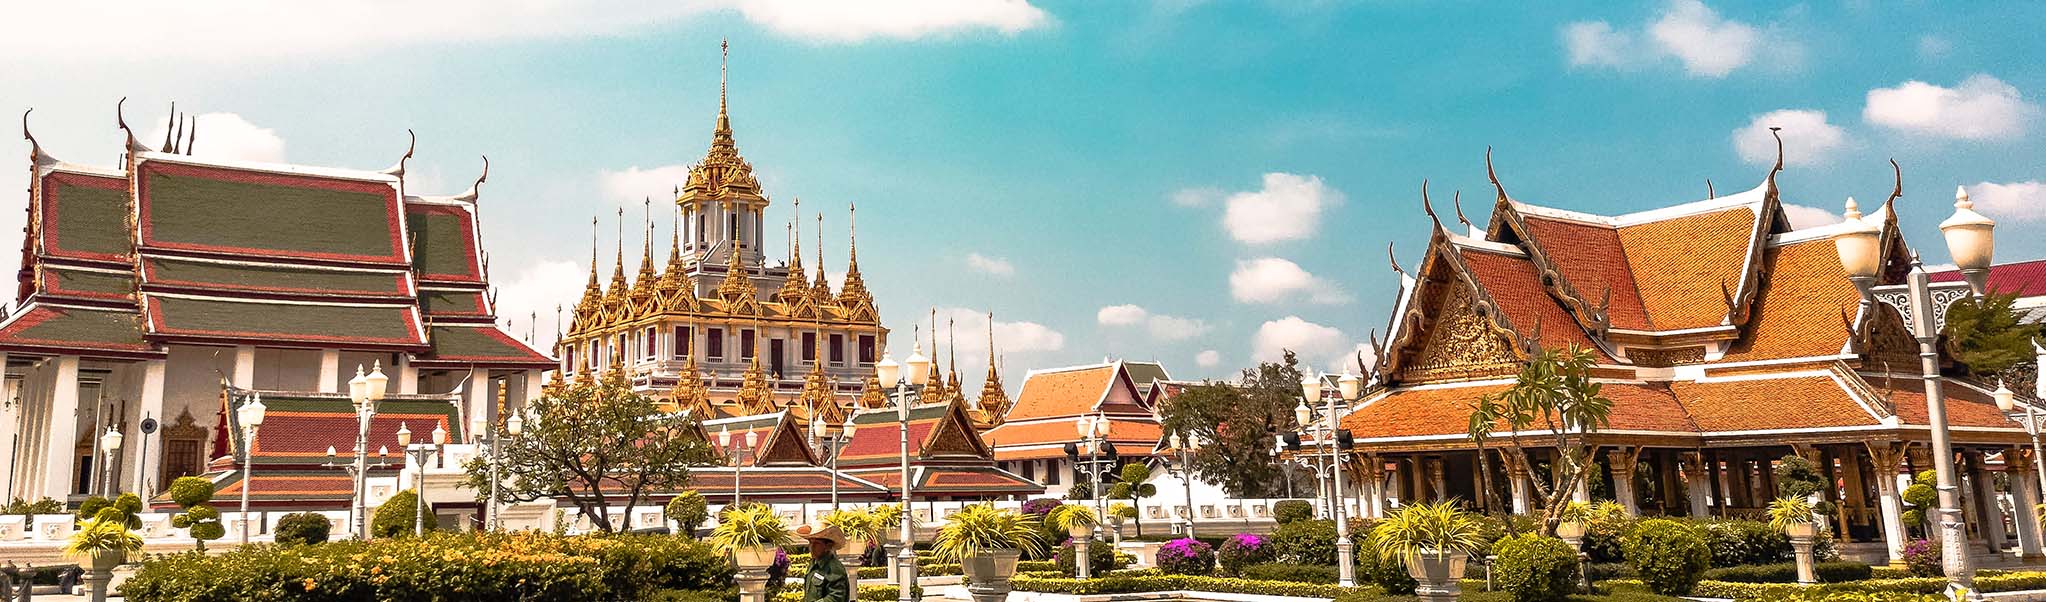 thailande temple vincent thepaut